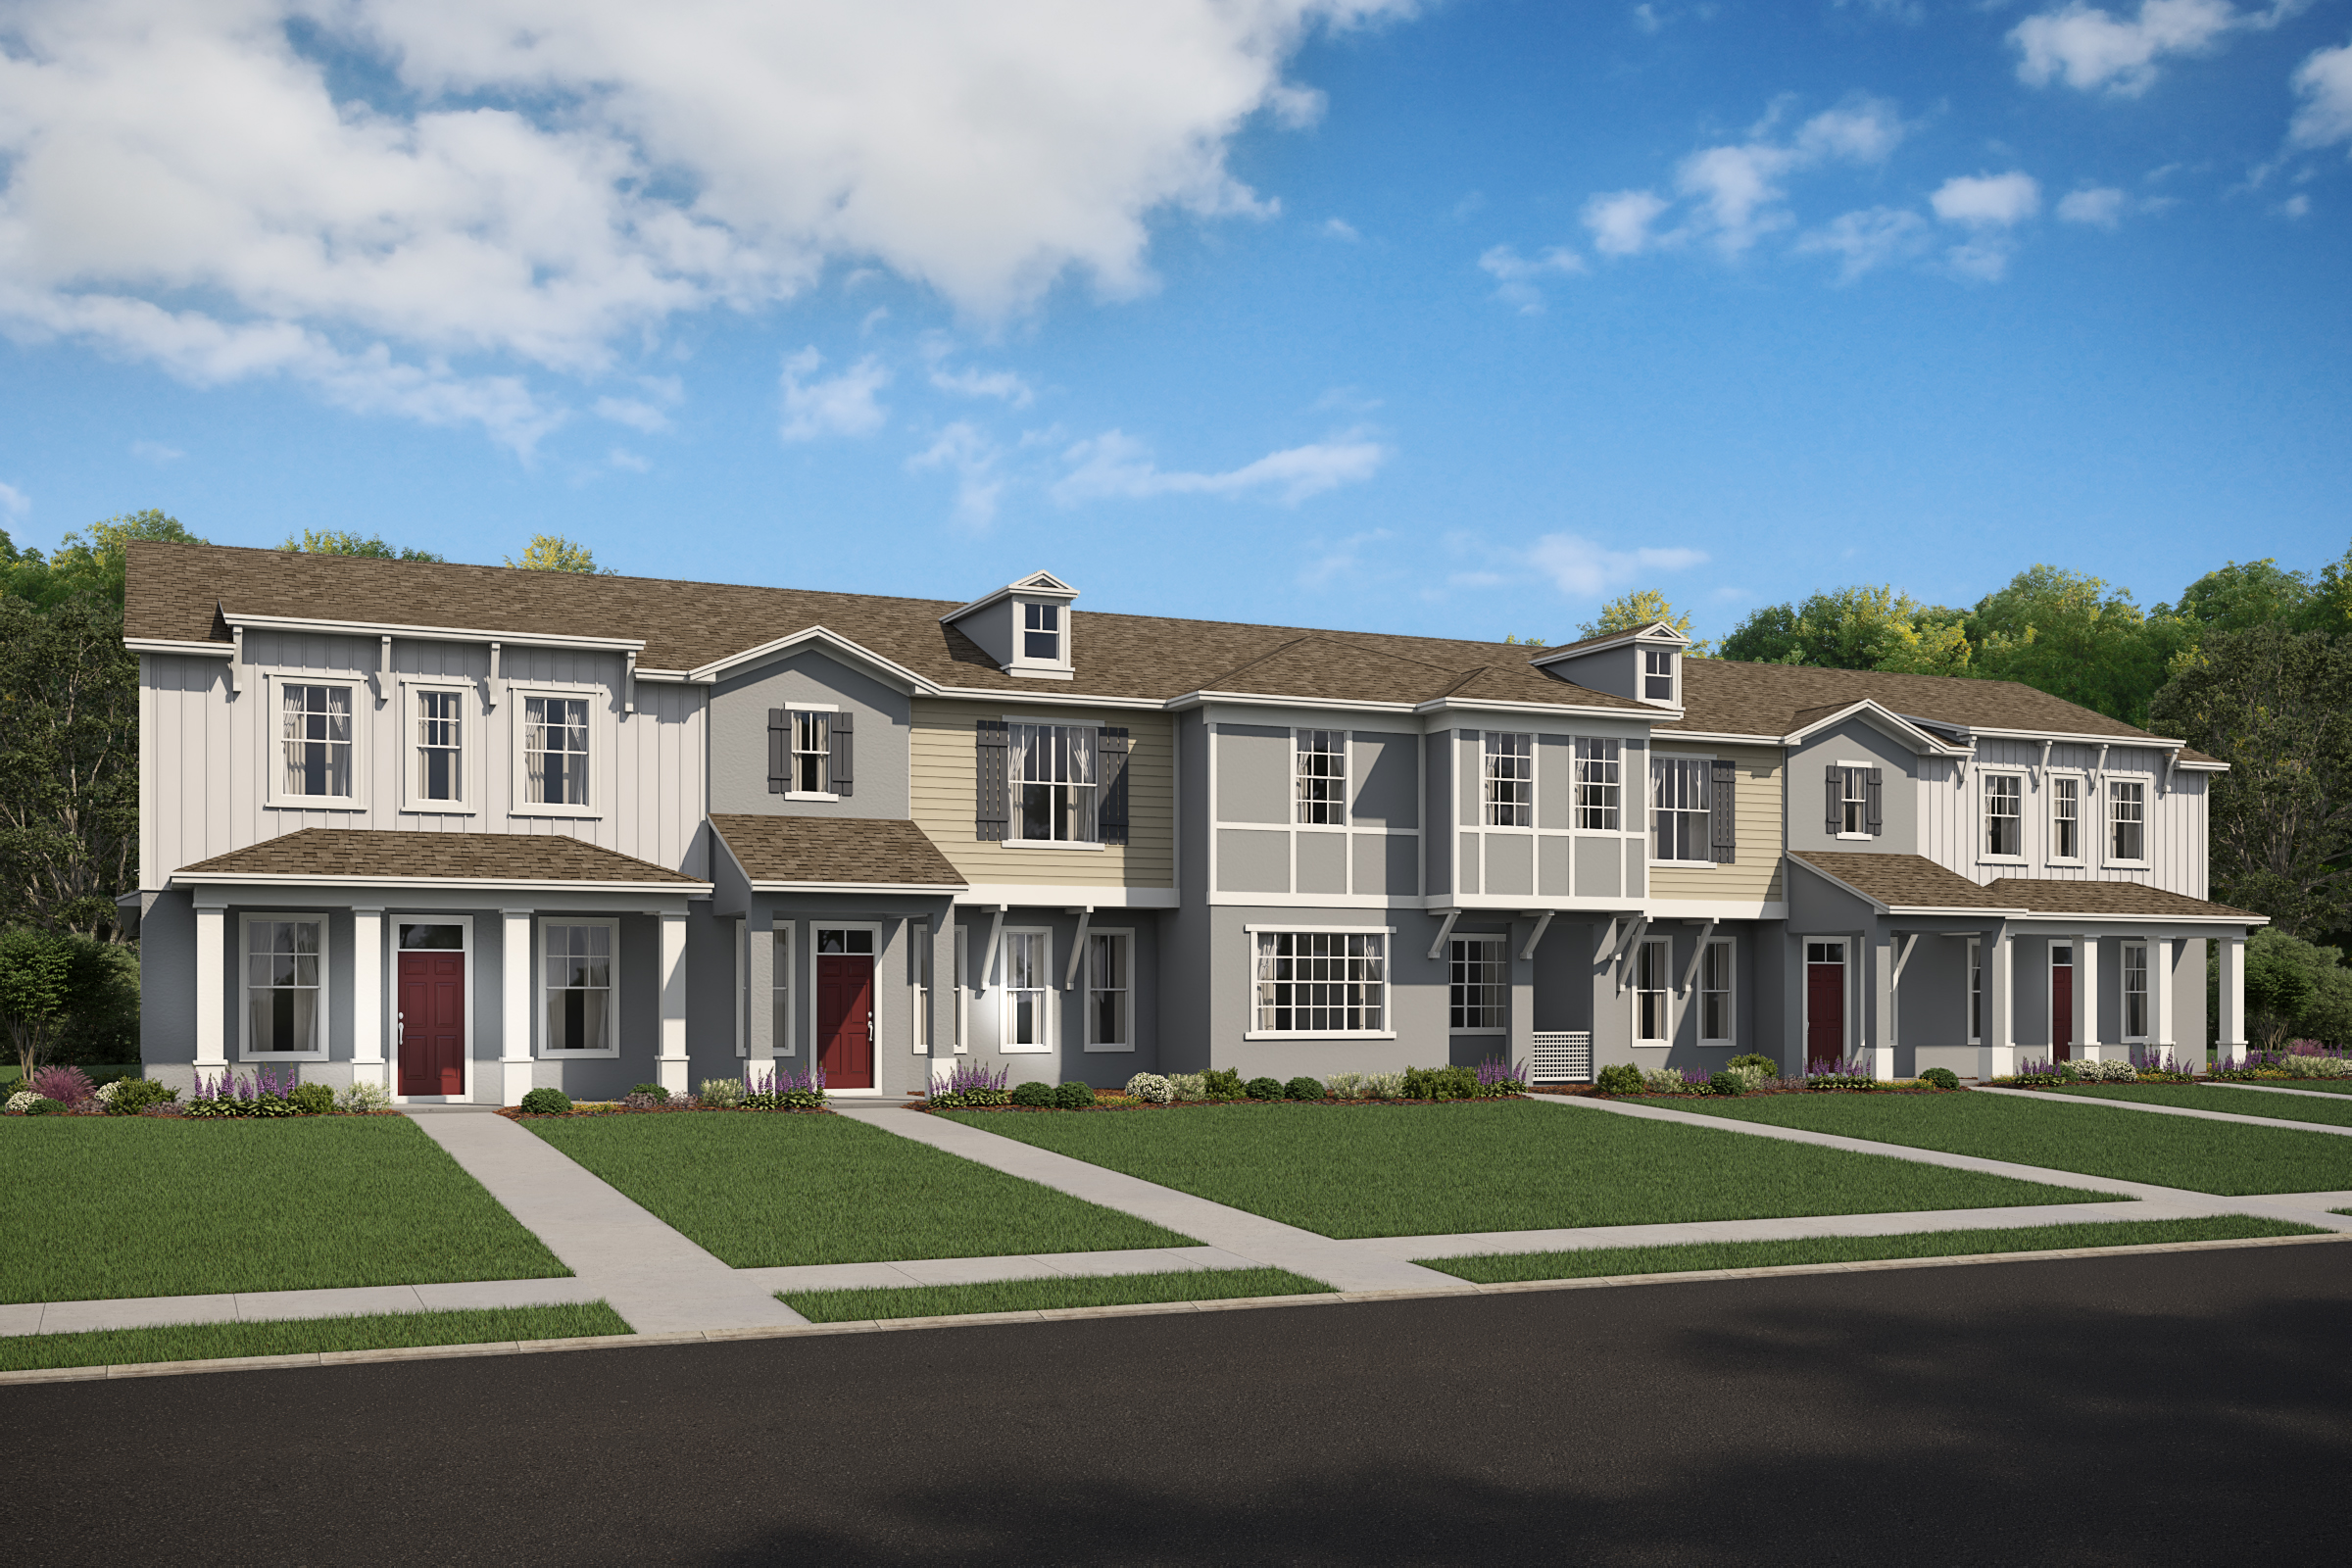 New homes conceptual model